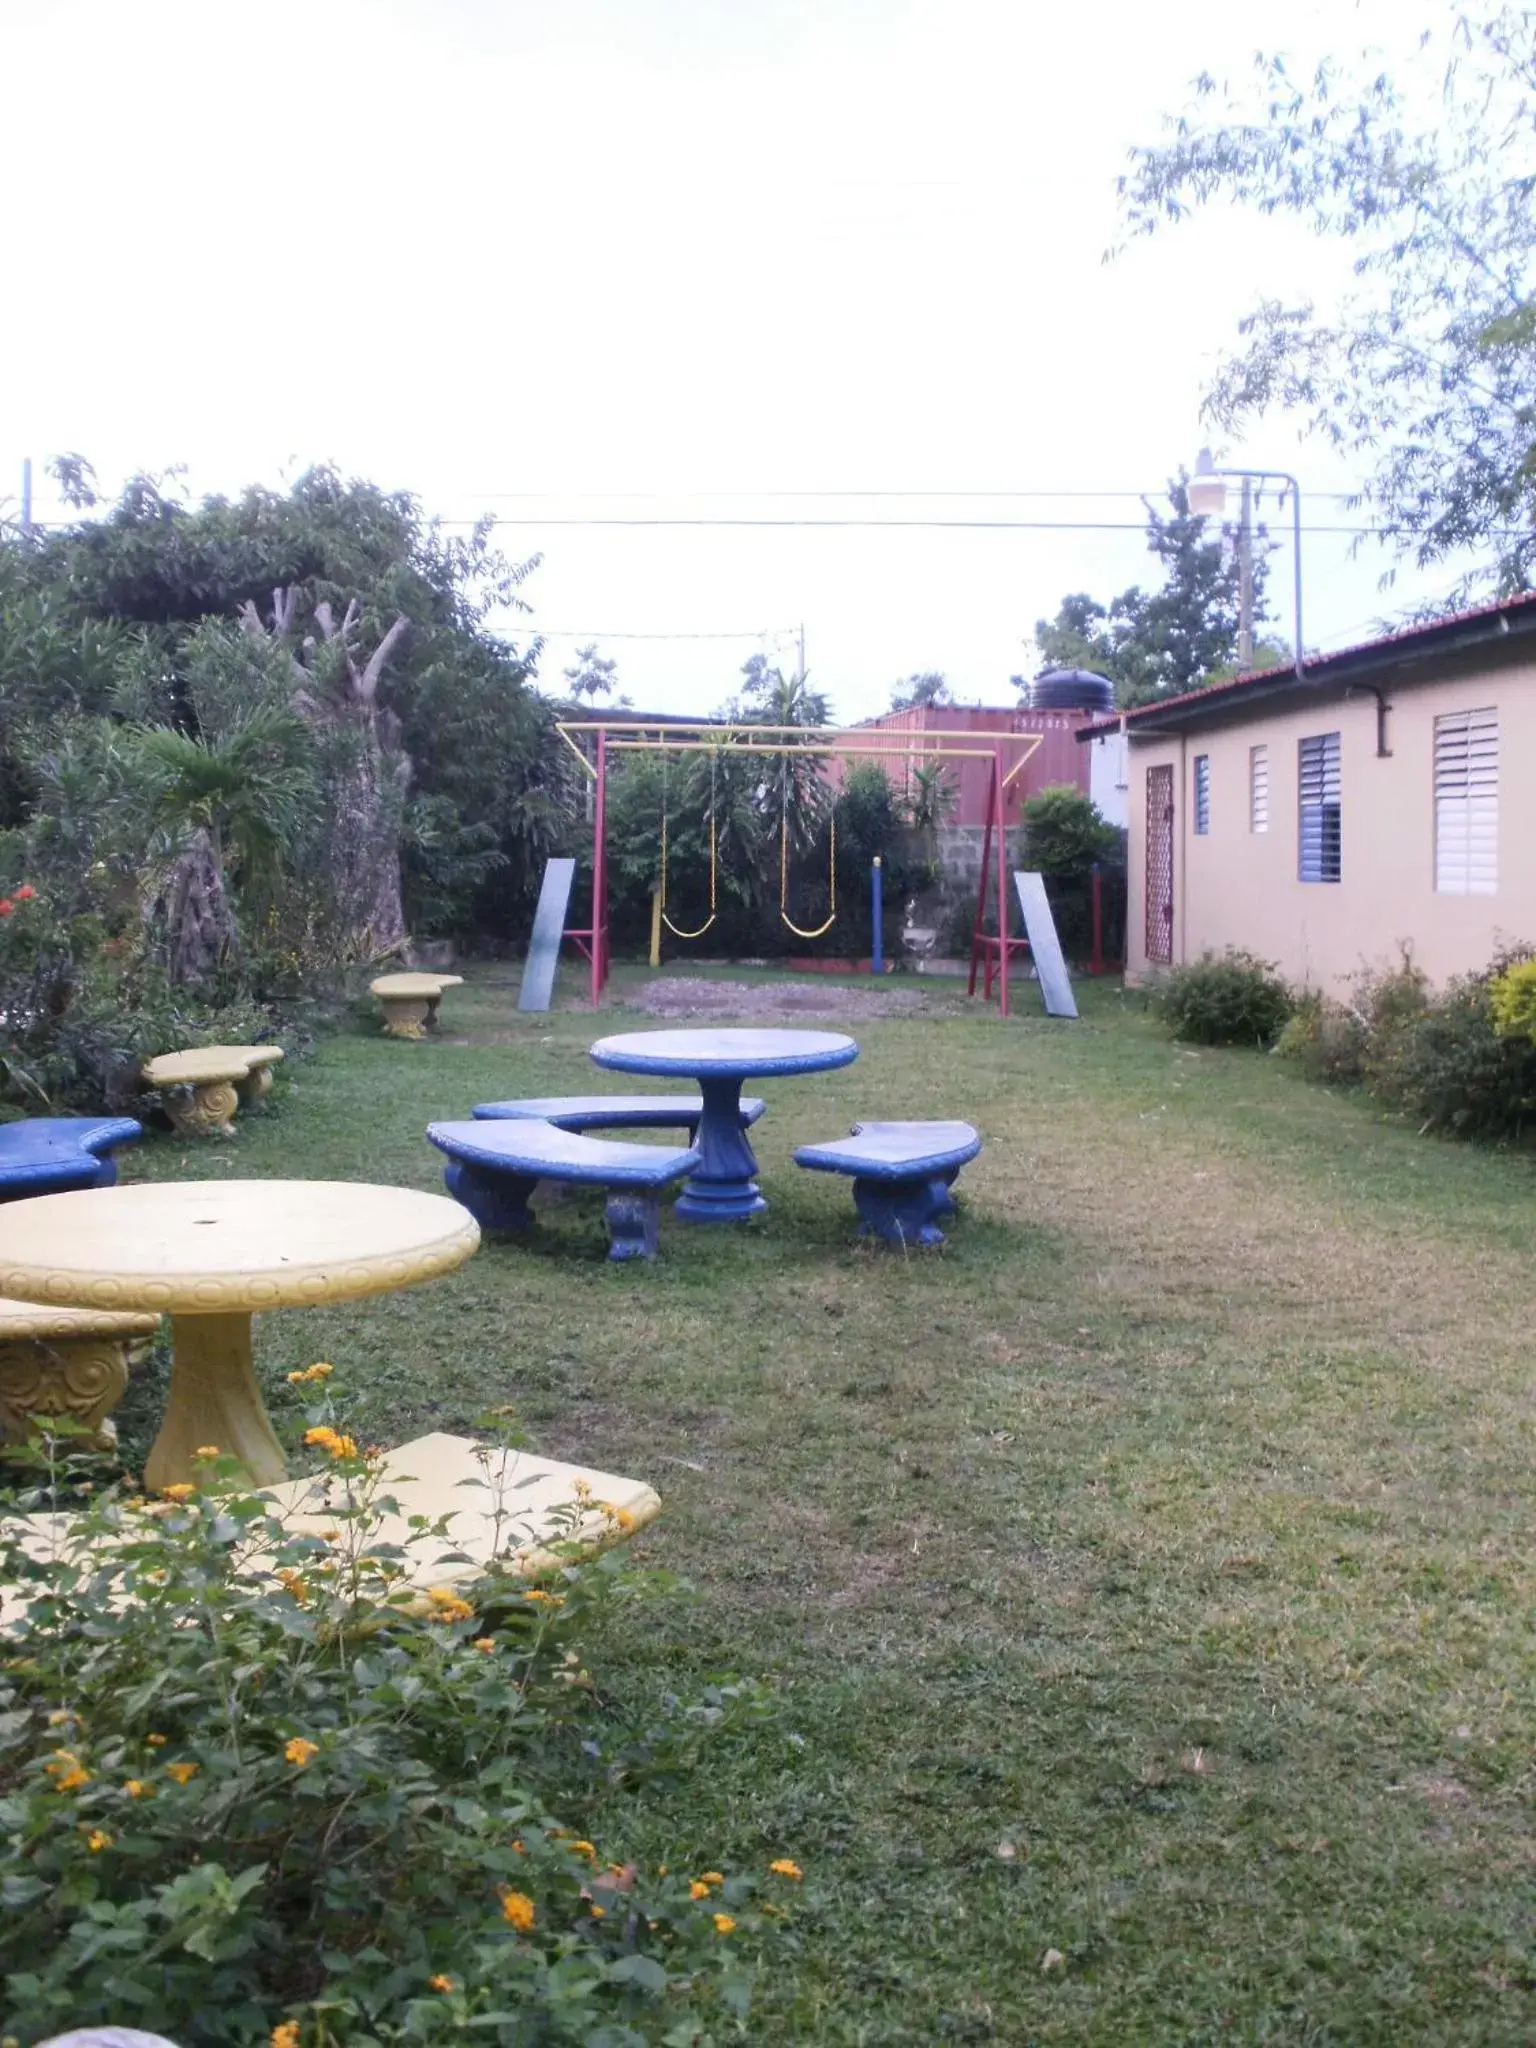 Children play ground, Garden in Pineapple Court Hotel